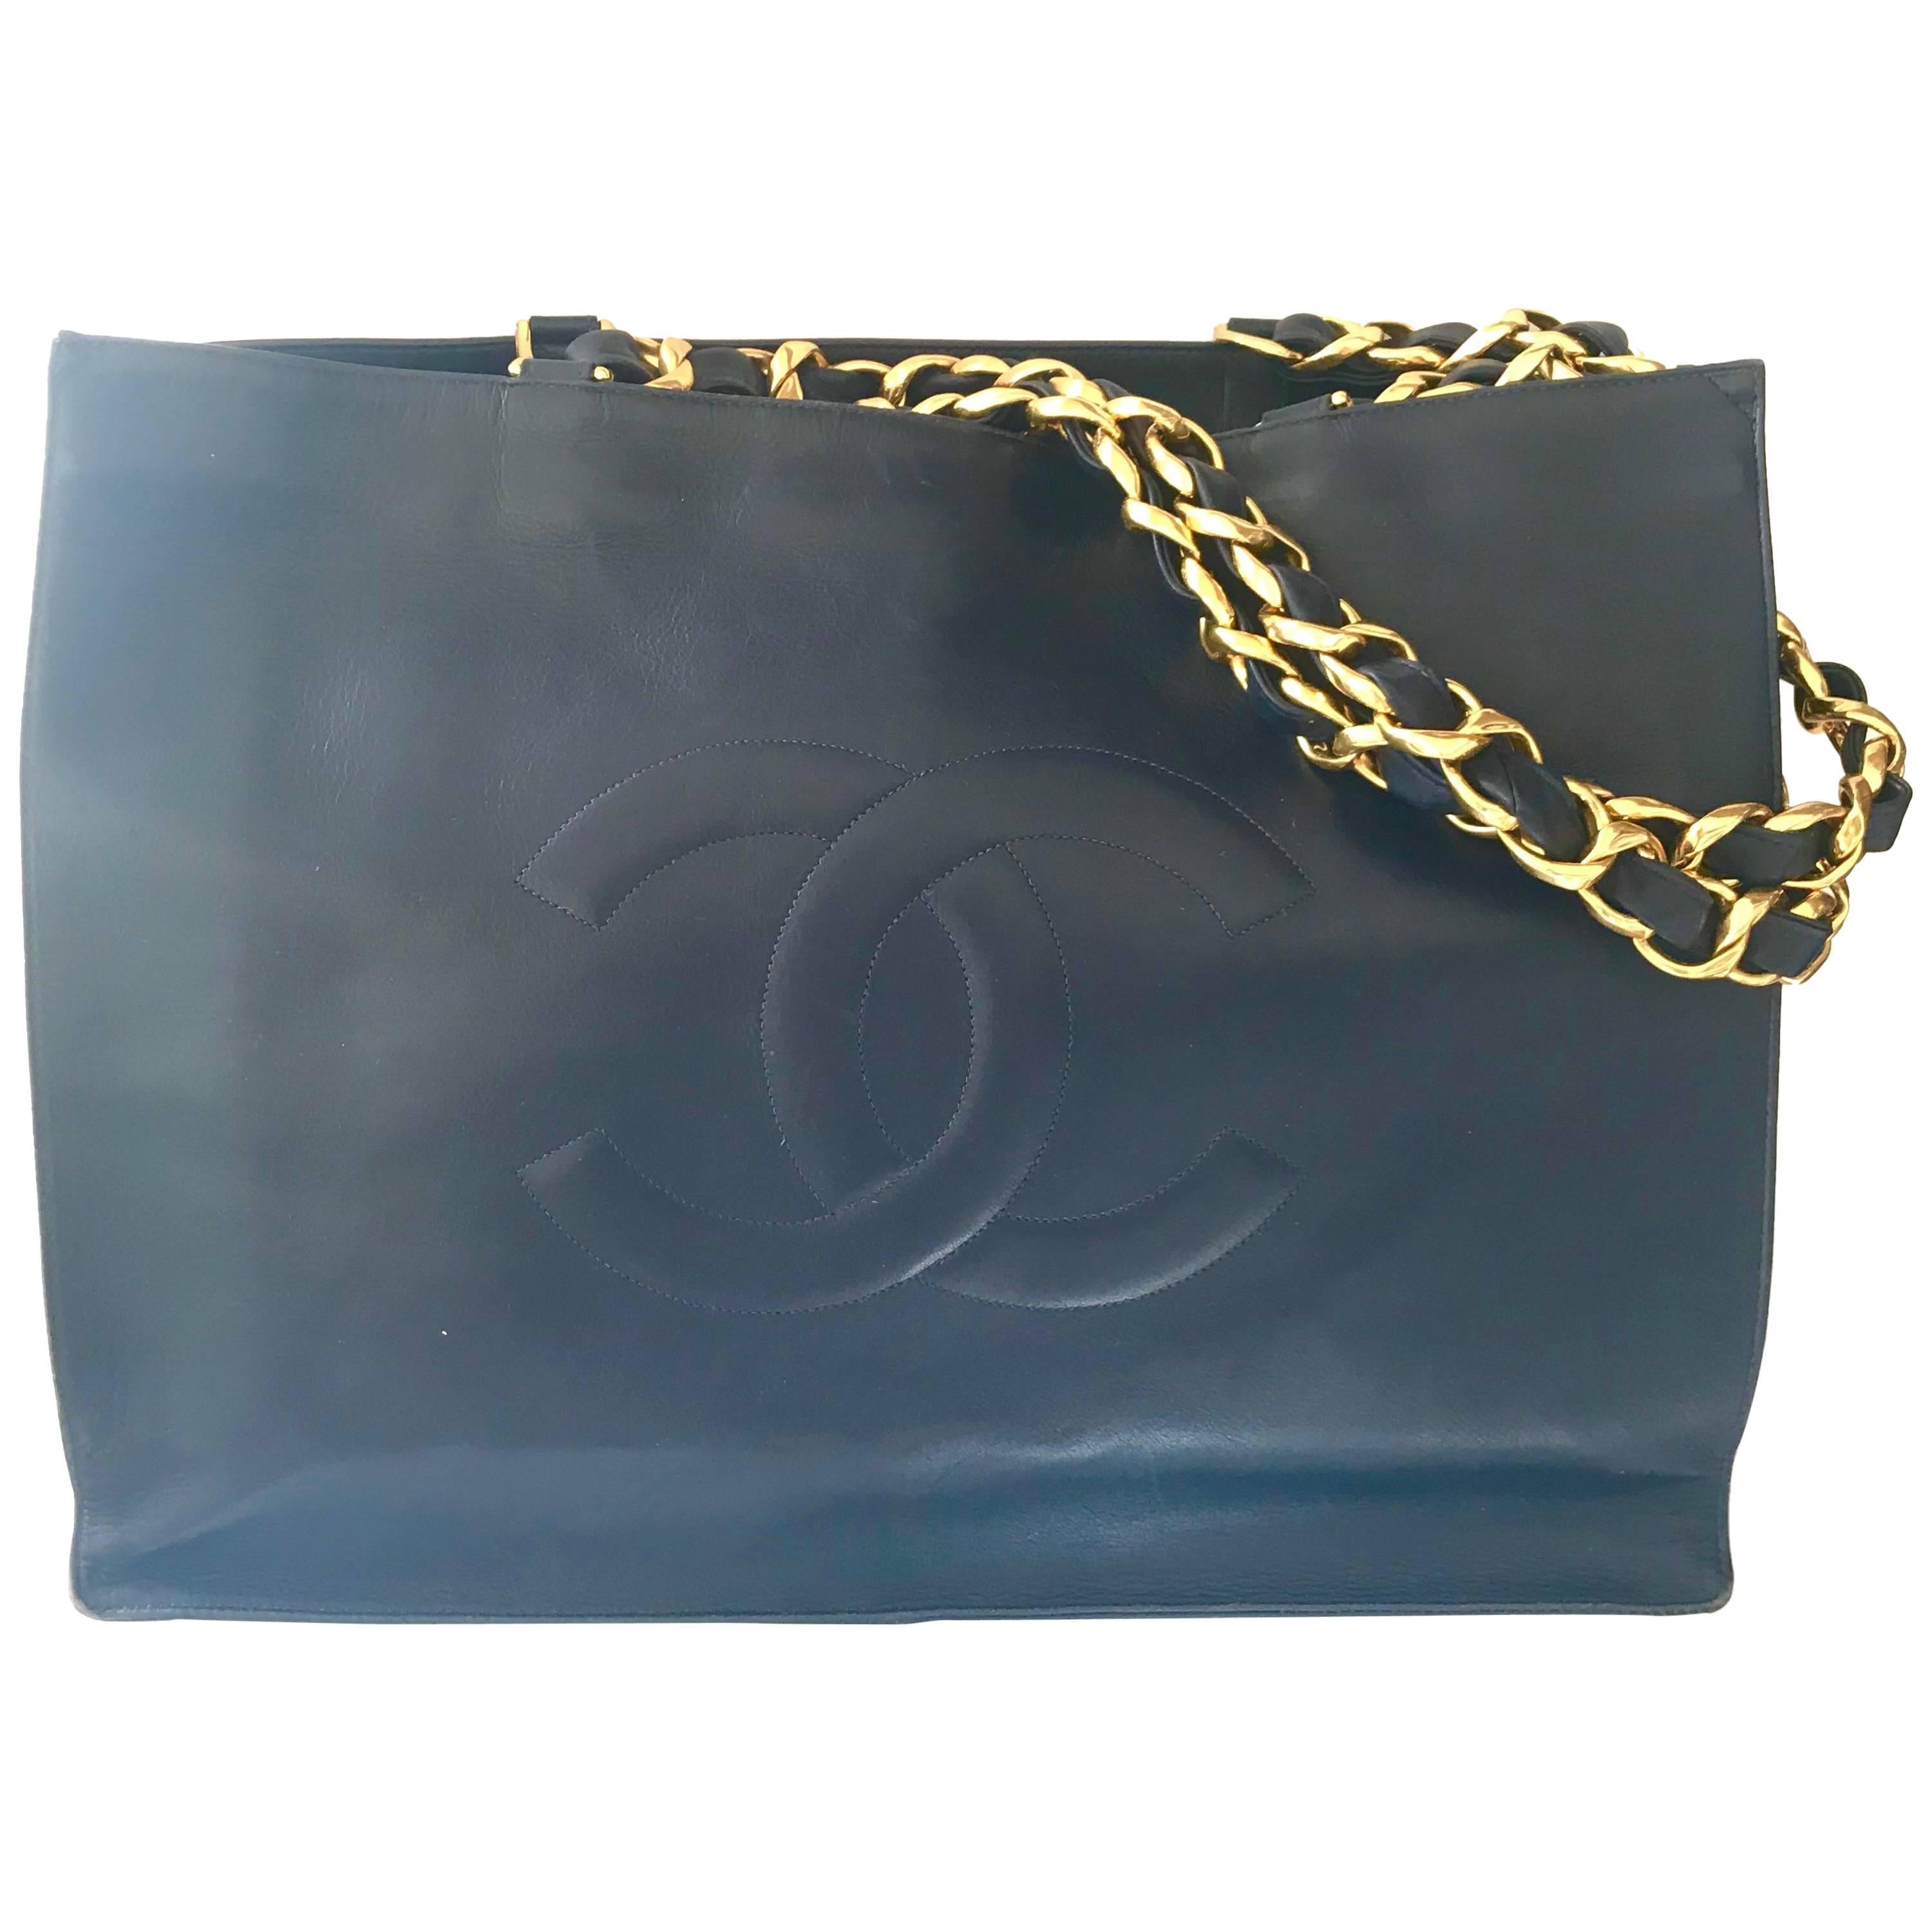 Vintage CHANEL navy calfskin large golden chain shoulder tote bag with large CC.